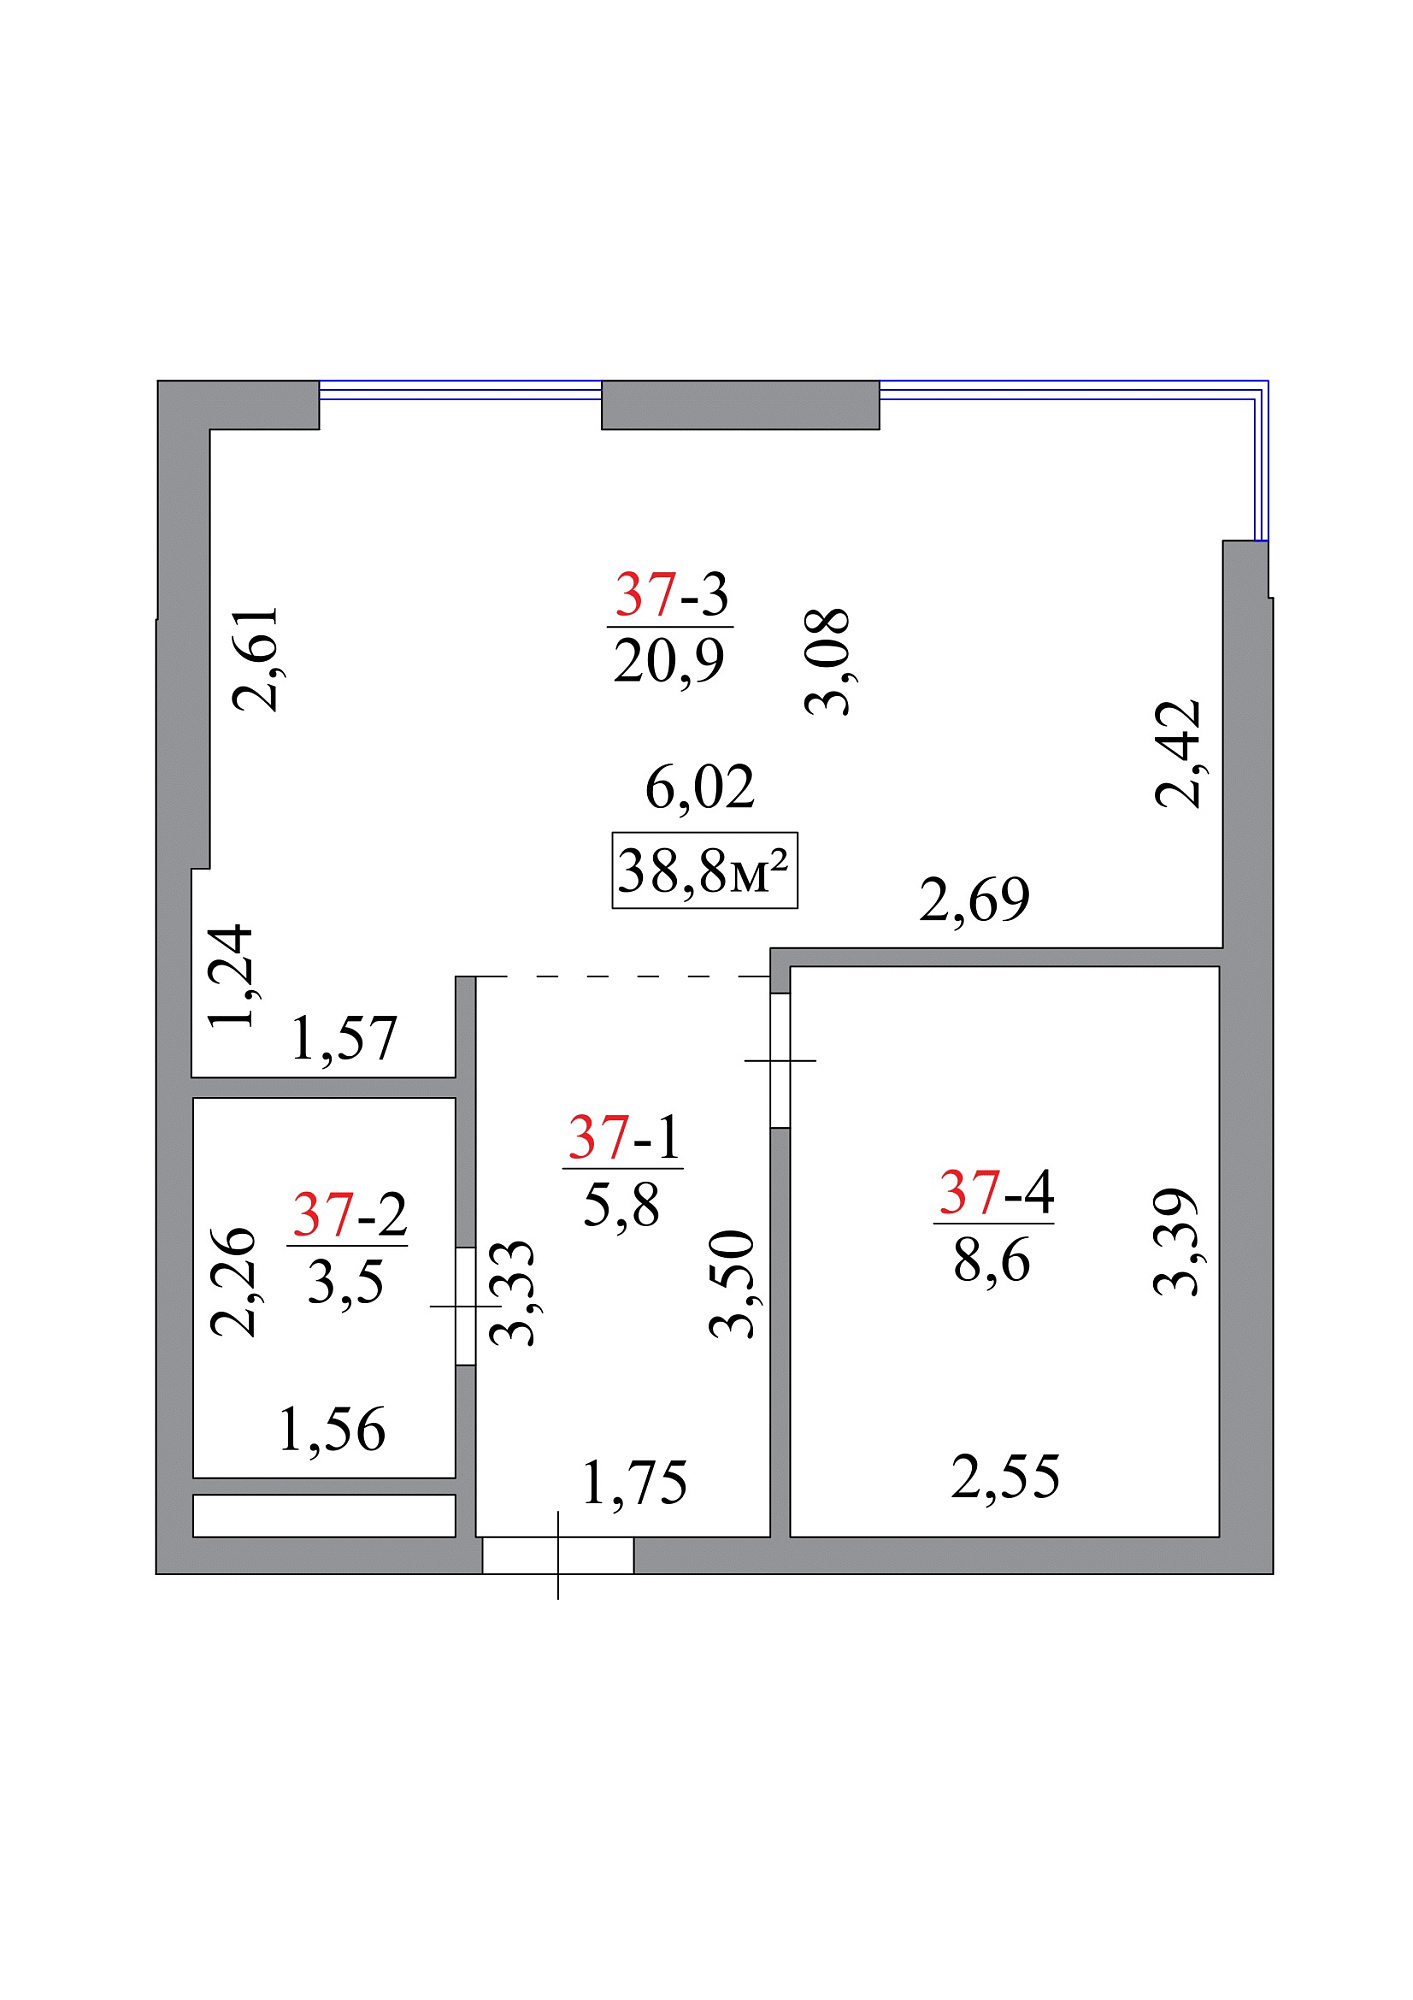 Планировка 1-к квартира площей 38.8м2, AB-07-04/0034а.